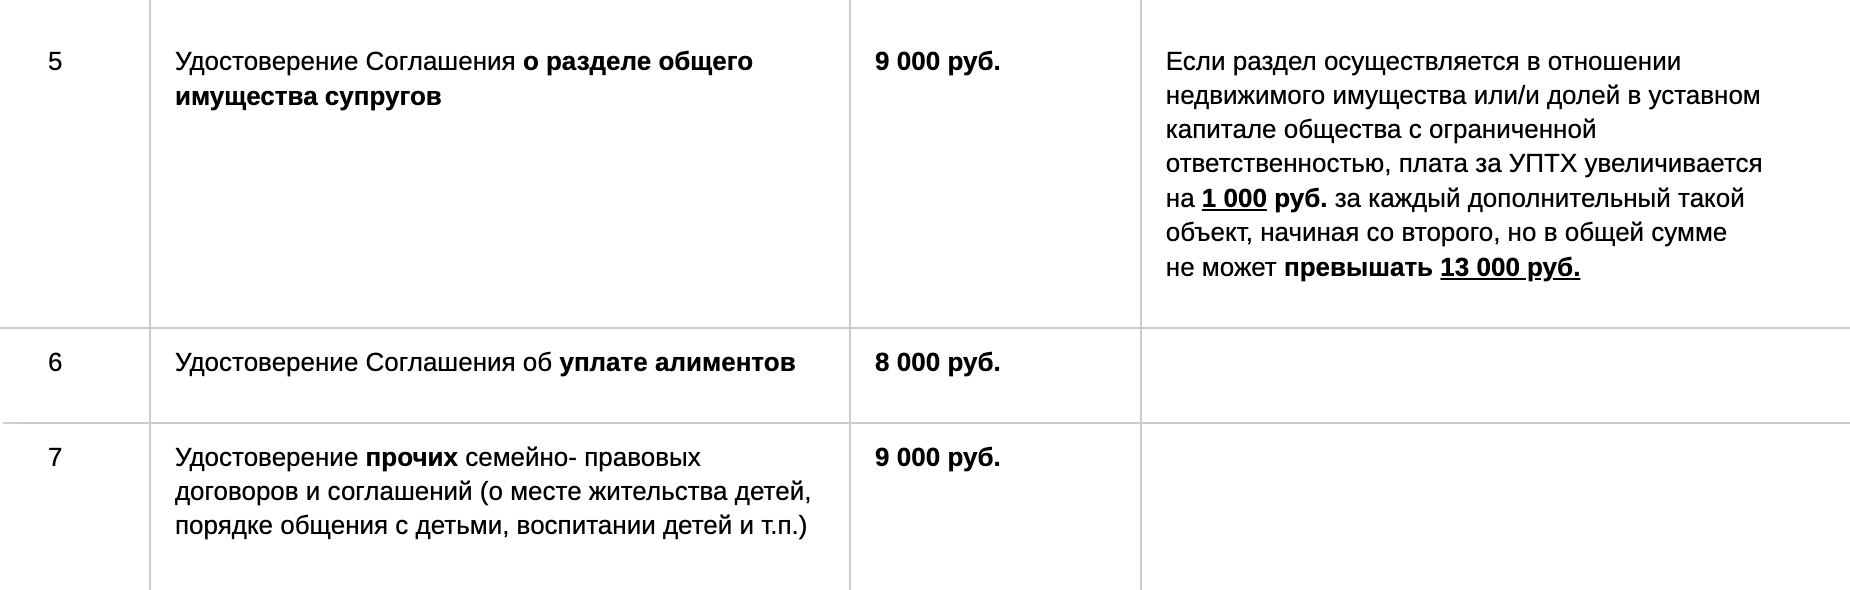 Вот для примера тарифы трех нотариусов Москвы. Стоимость удостоверения соглашения об уплате алиментов — от 8000 ₽, прочих семейных соглашений — от 8500 ₽